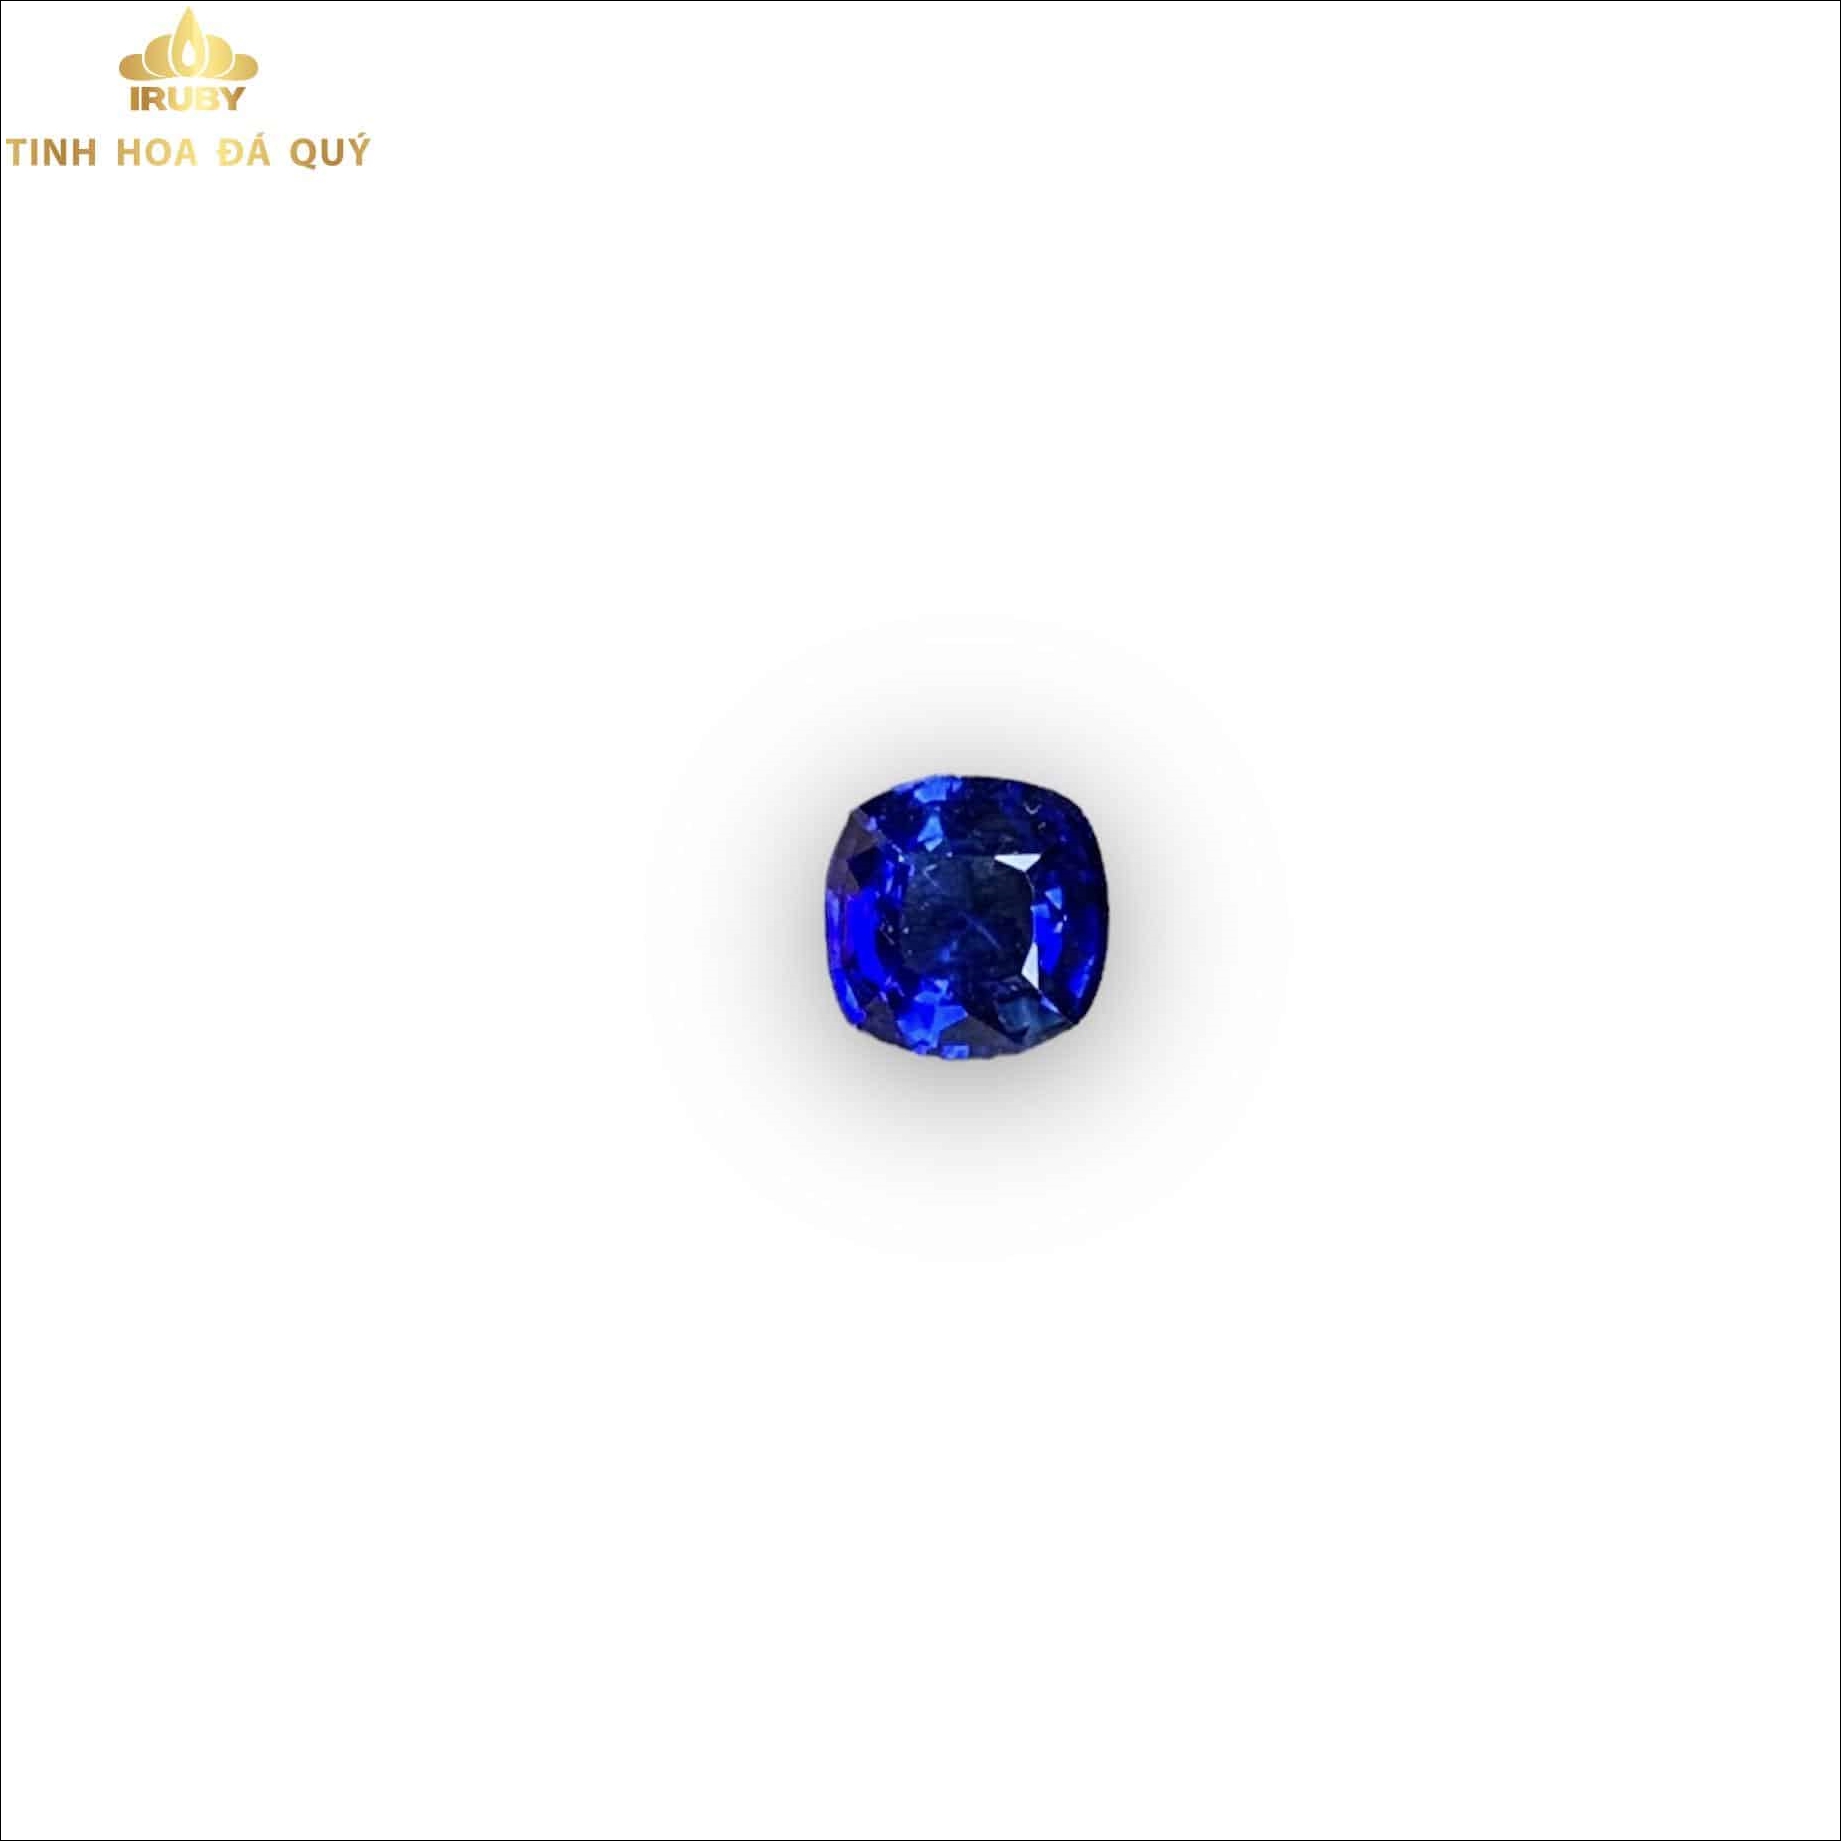 Viên Sapphire xanh lam Hoàng Gia - IRBS 2303105